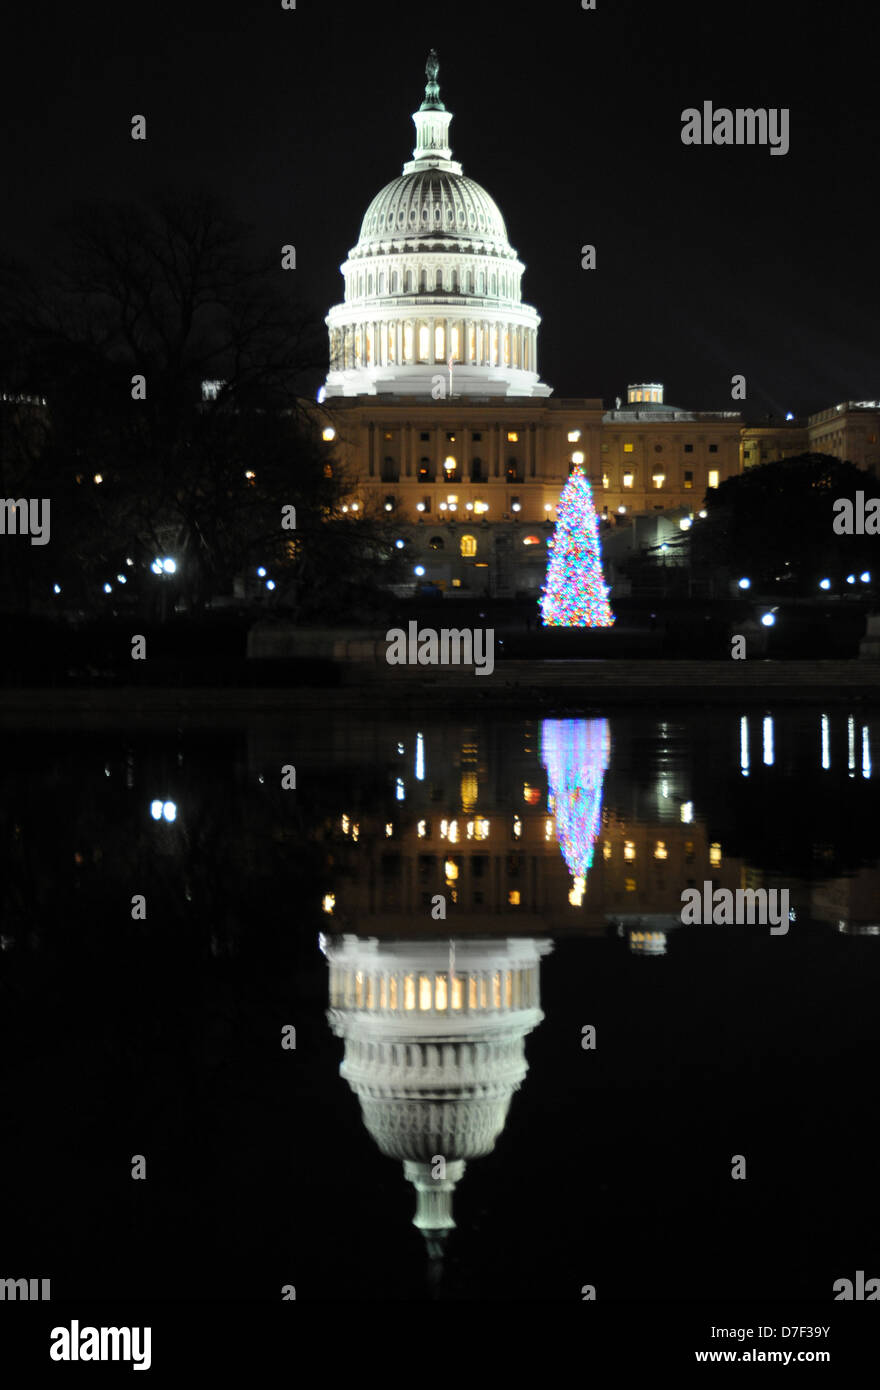 United States Capitol Dome et Ulysses S. Grant Memorial avec arbre de Noël reflète la nuit dans Capitol réflexion extérieure Banque D'Images